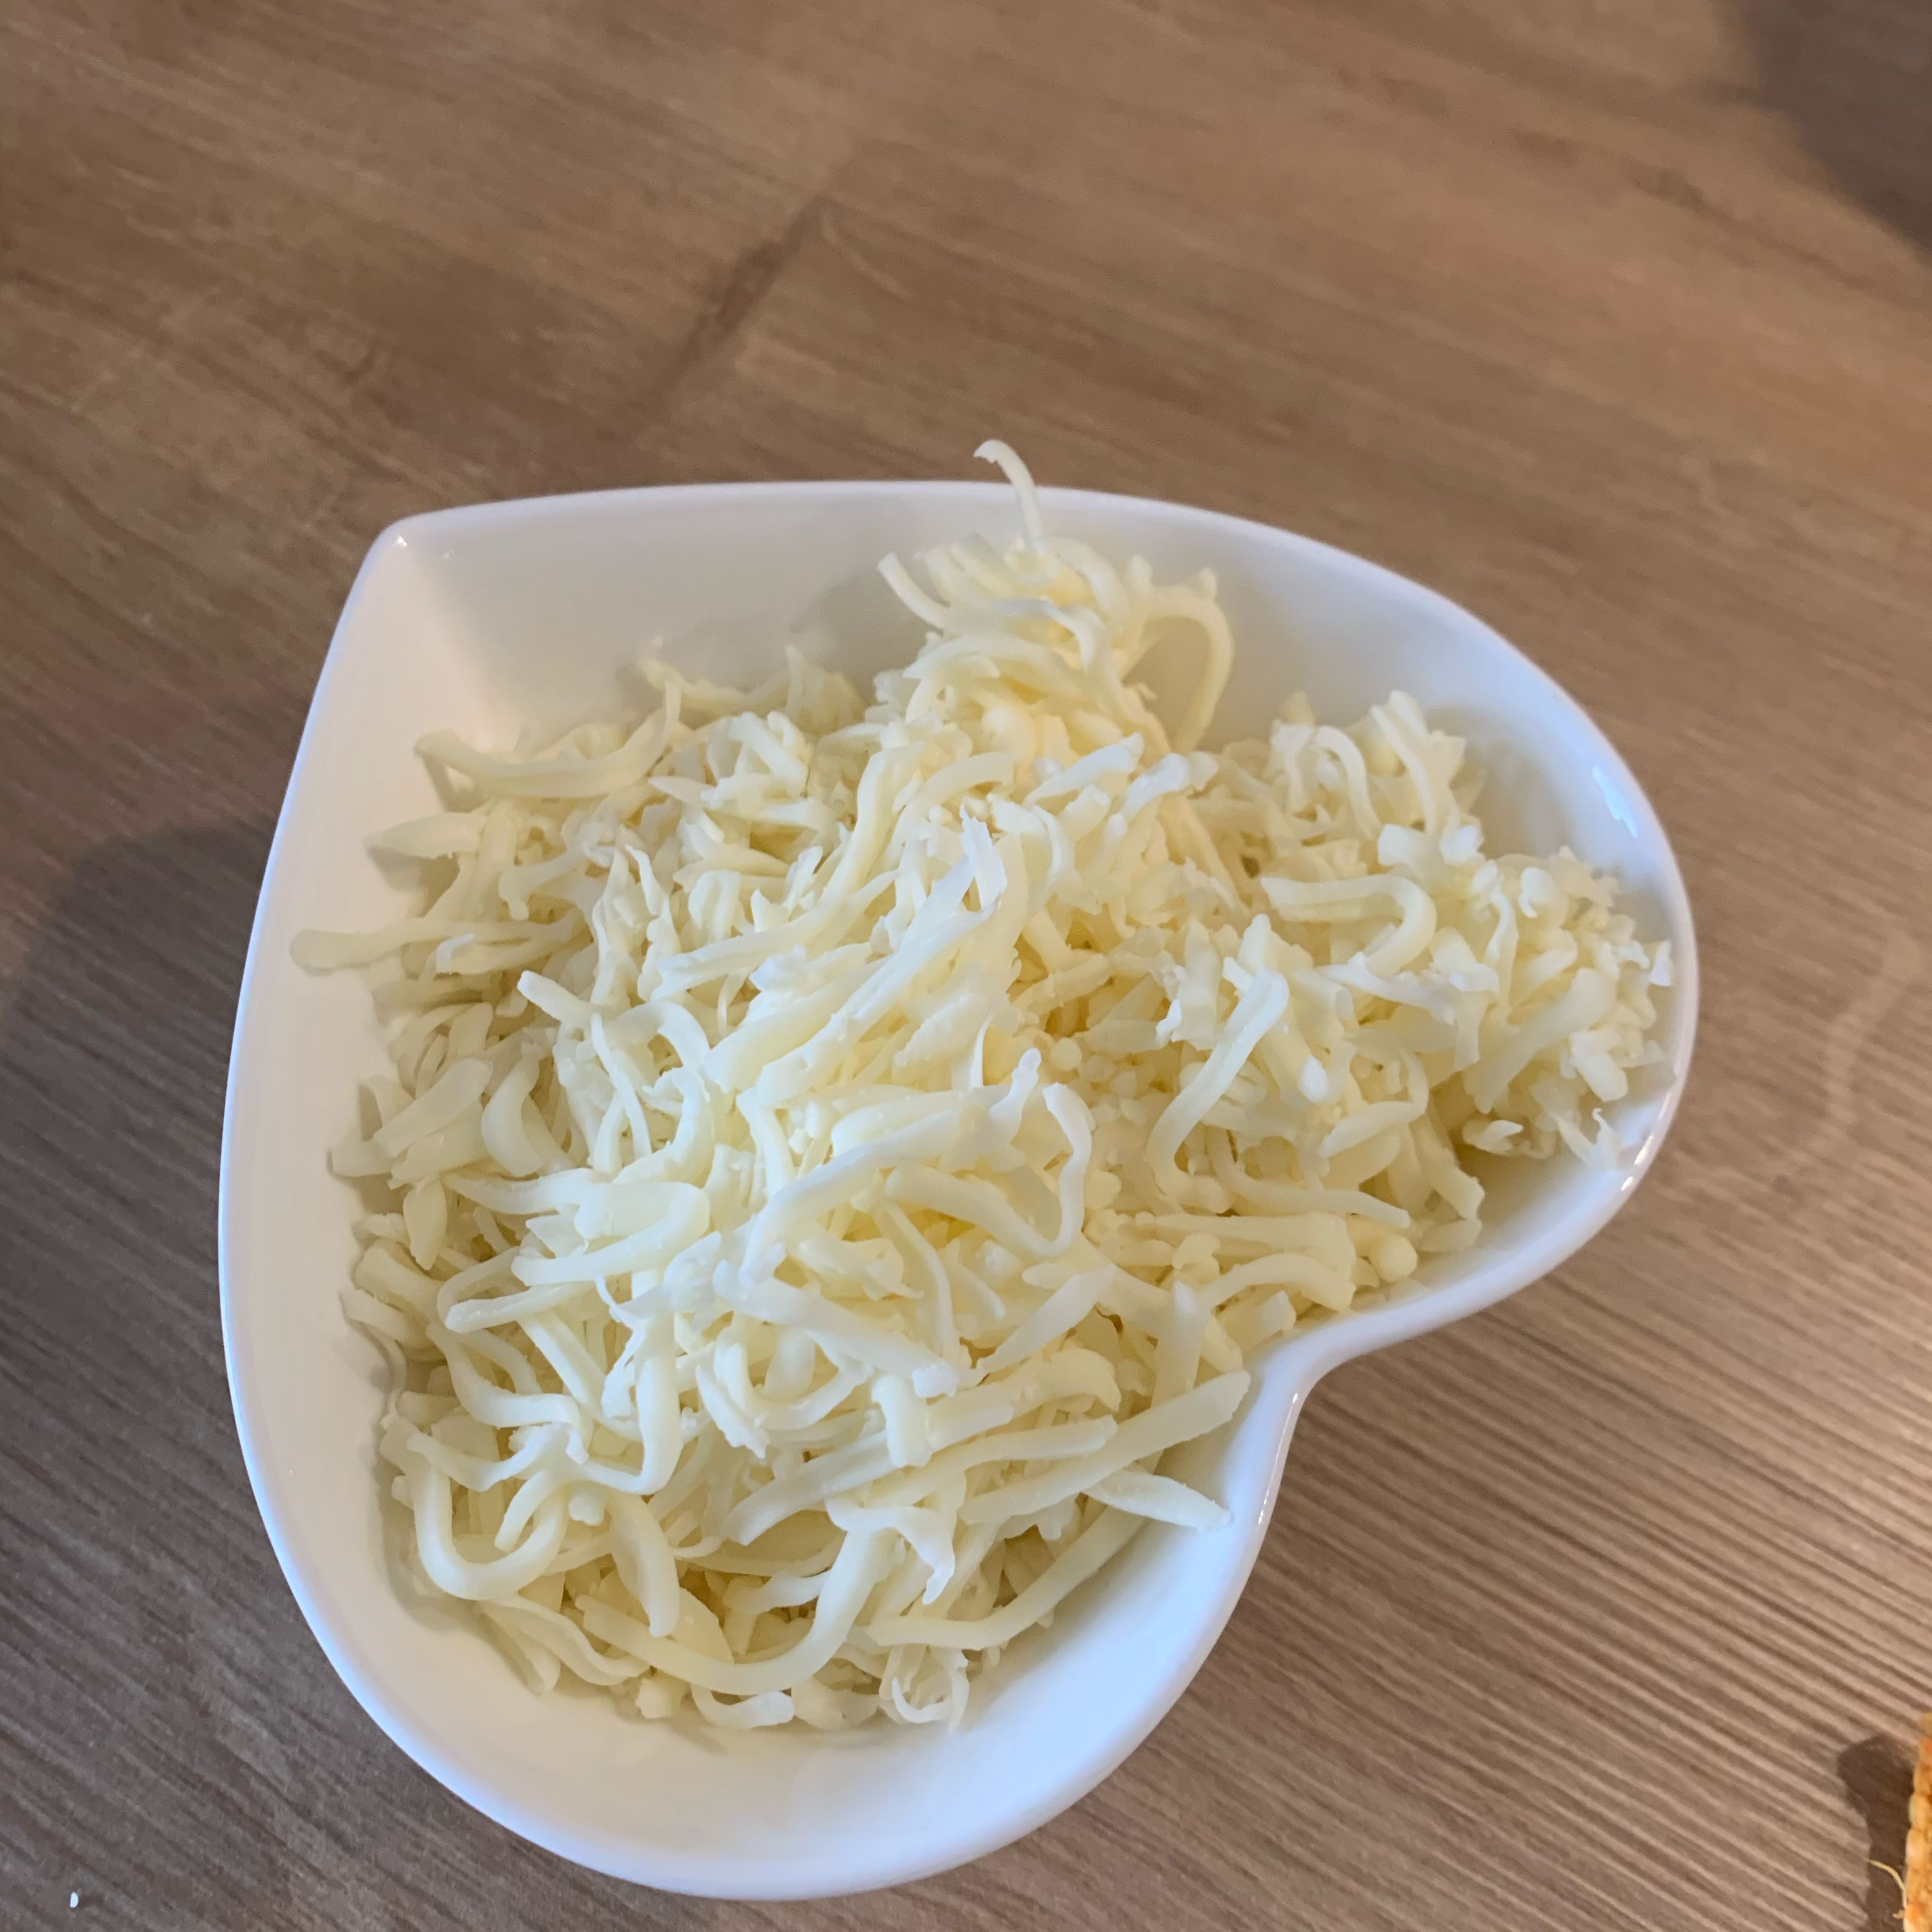 Auflauf mit Käse oder mozzarella bedeken